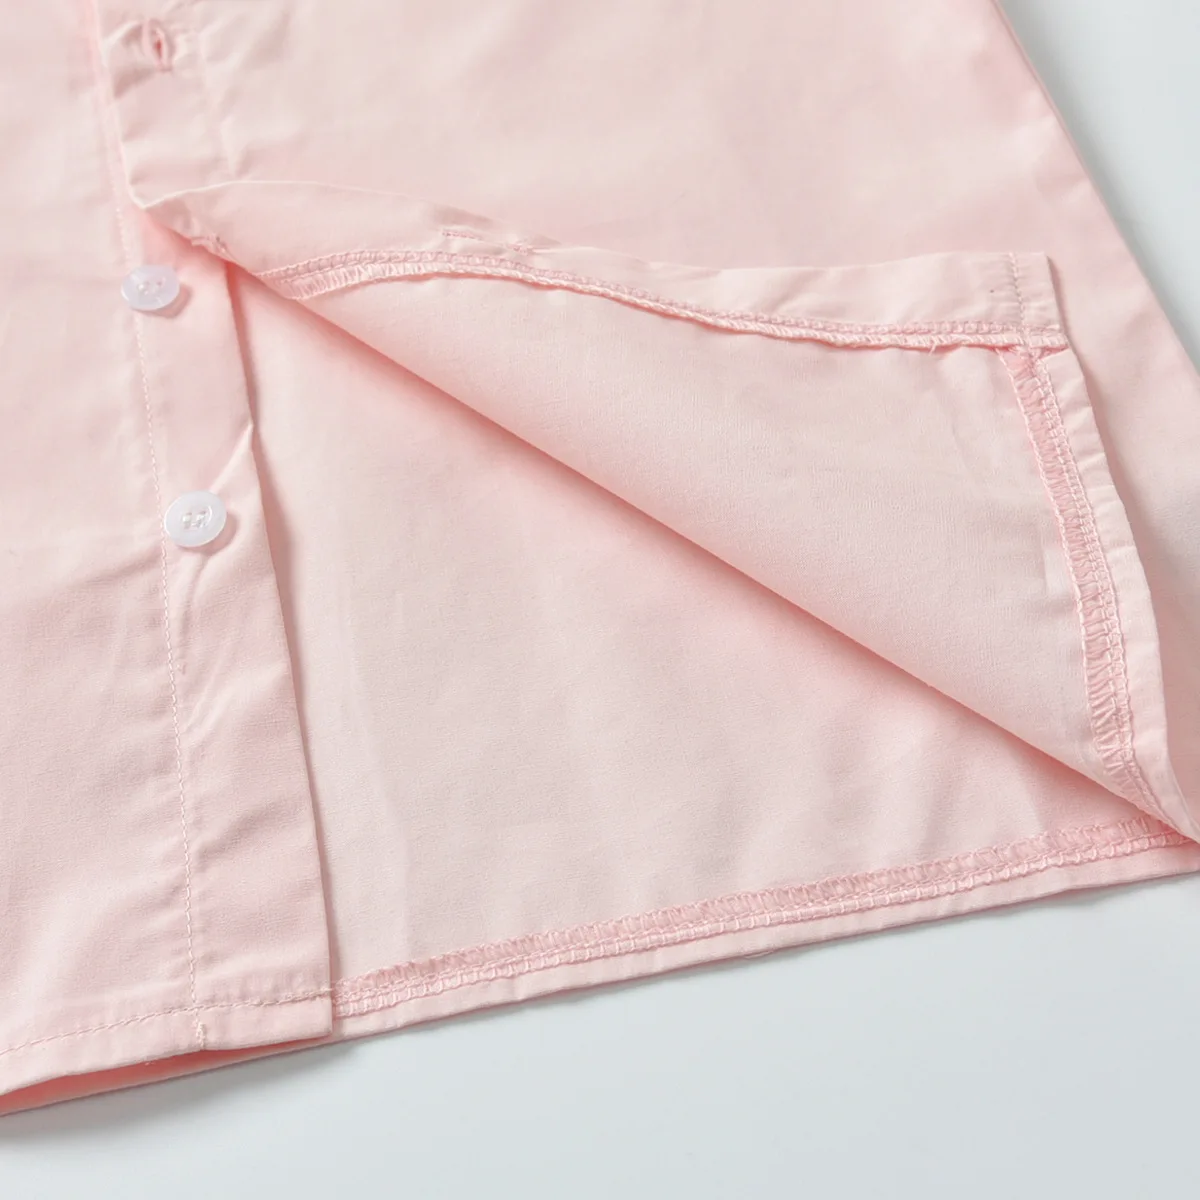 Tanie Zestaw ubranek dla chłopca strój dżentelmen różowa koszula sklep